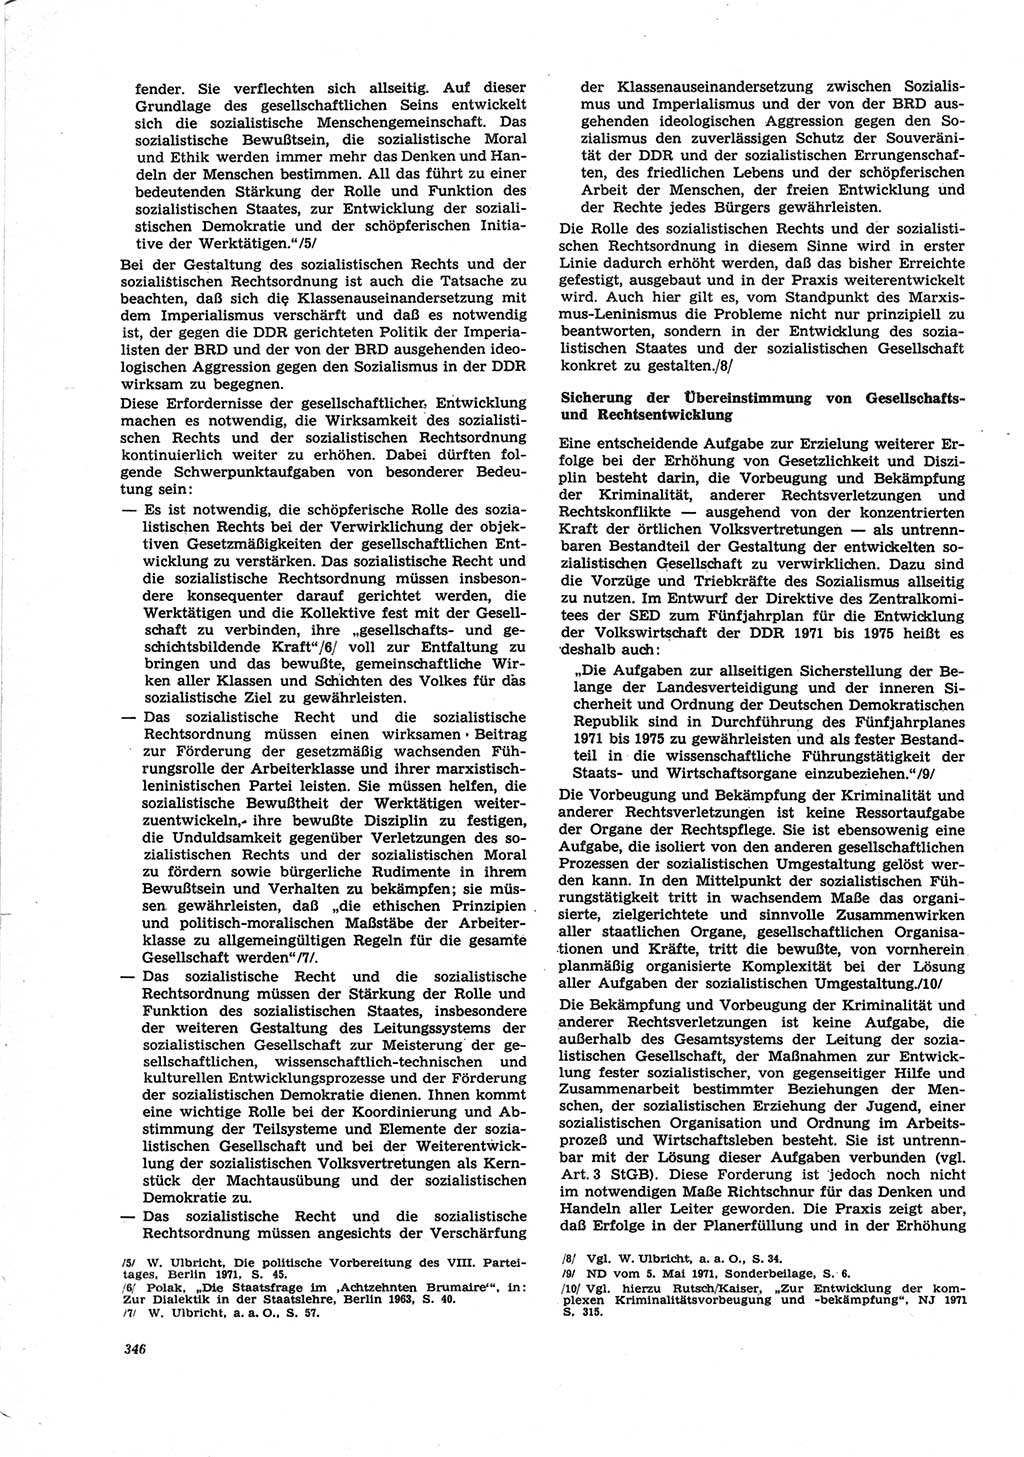 Neue Justiz (NJ), Zeitschrift für Recht und Rechtswissenschaft [Deutsche Demokratische Republik (DDR)], 25. Jahrgang 1971, Seite 346 (NJ DDR 1971, S. 346)